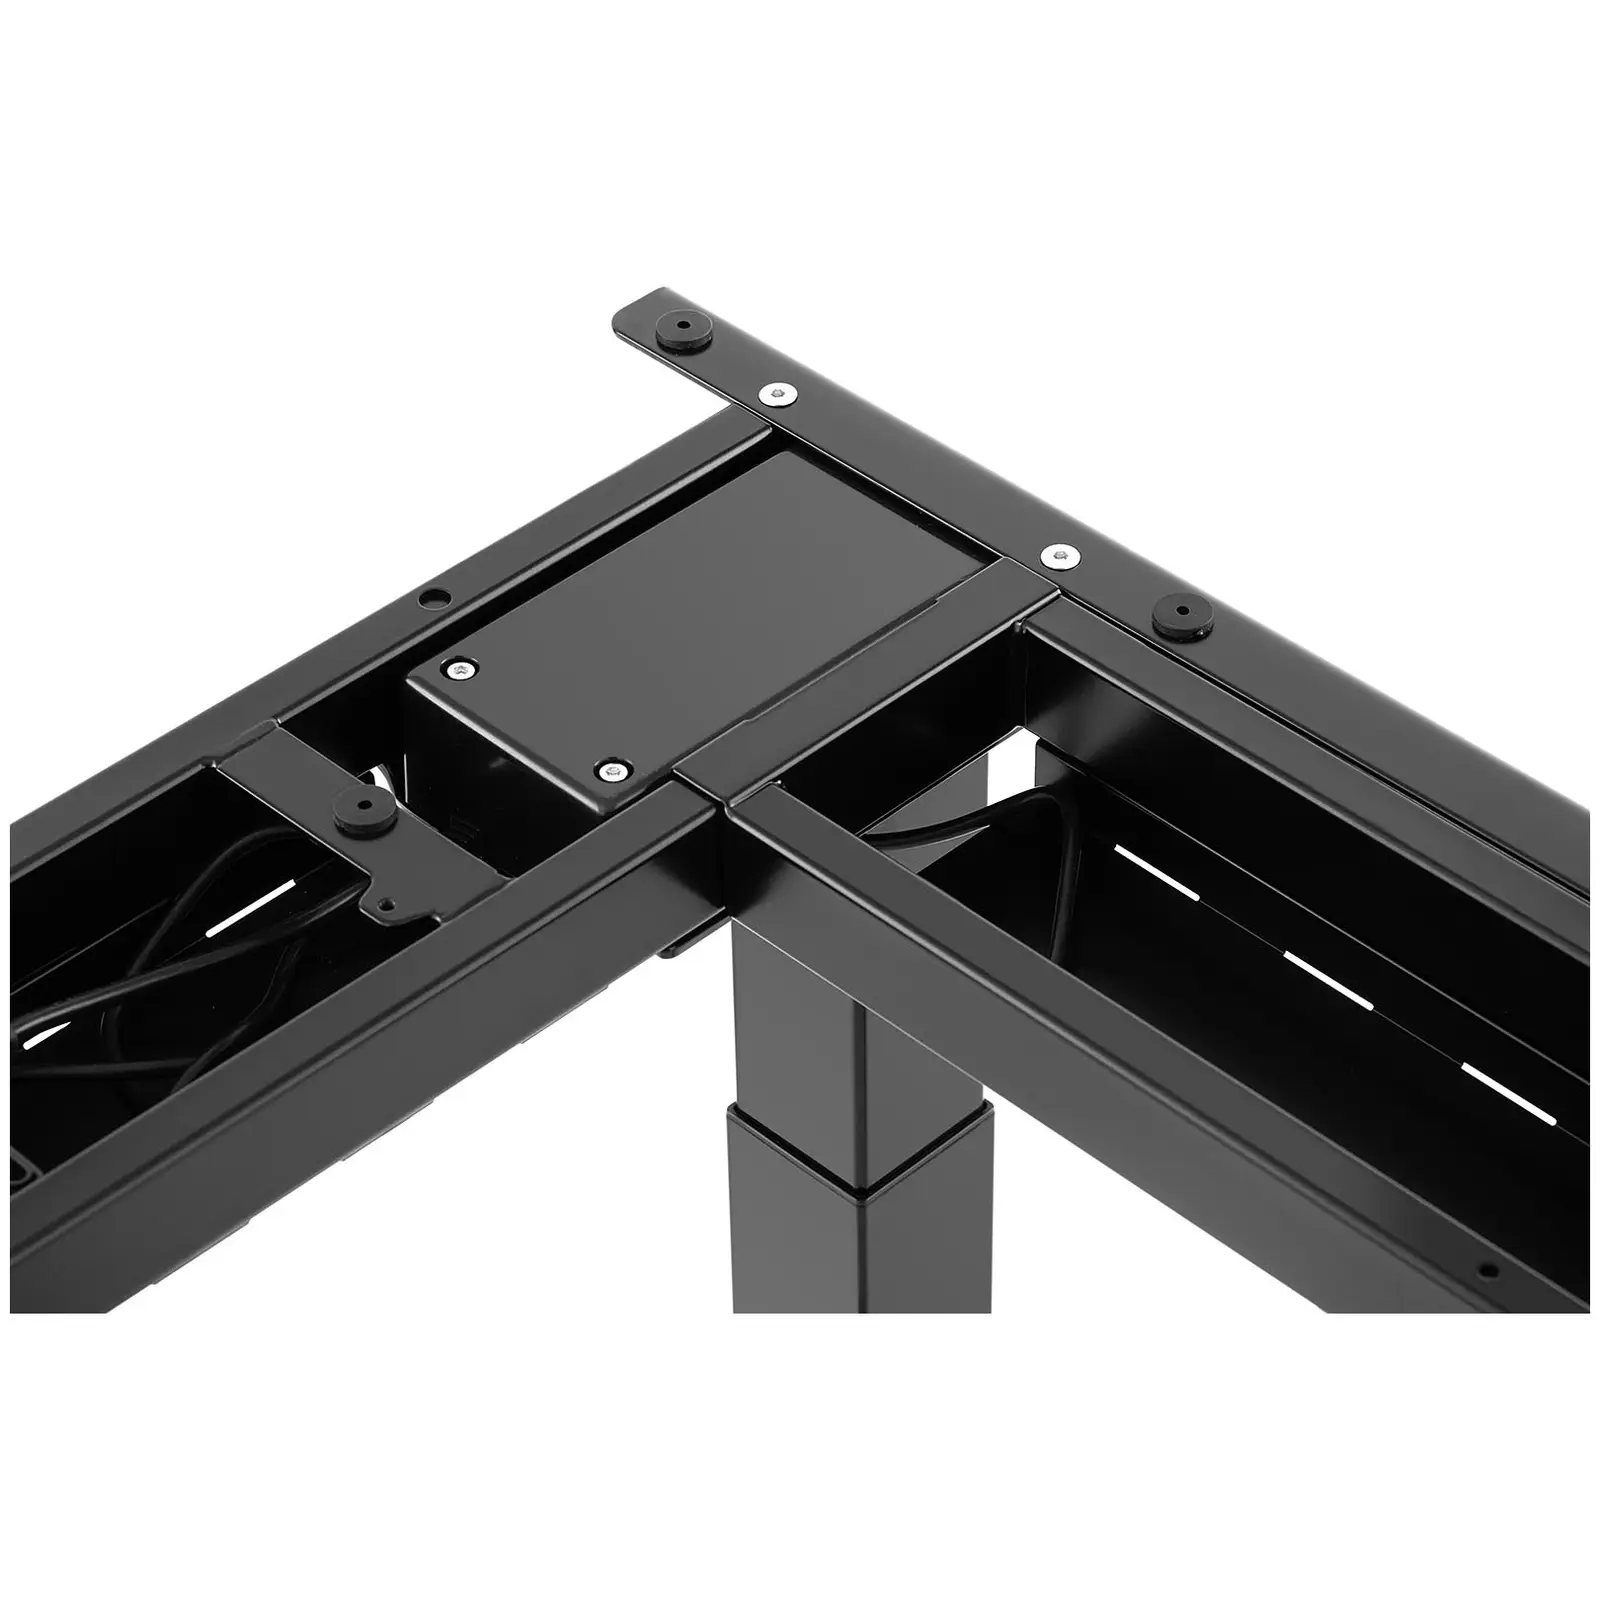 Adjustable Corner Desk Frame - Height: 60-125 cm - Width: 110-190 cm (left) / 110-190 cm (right) - Angle: 90 ° - 150 kg